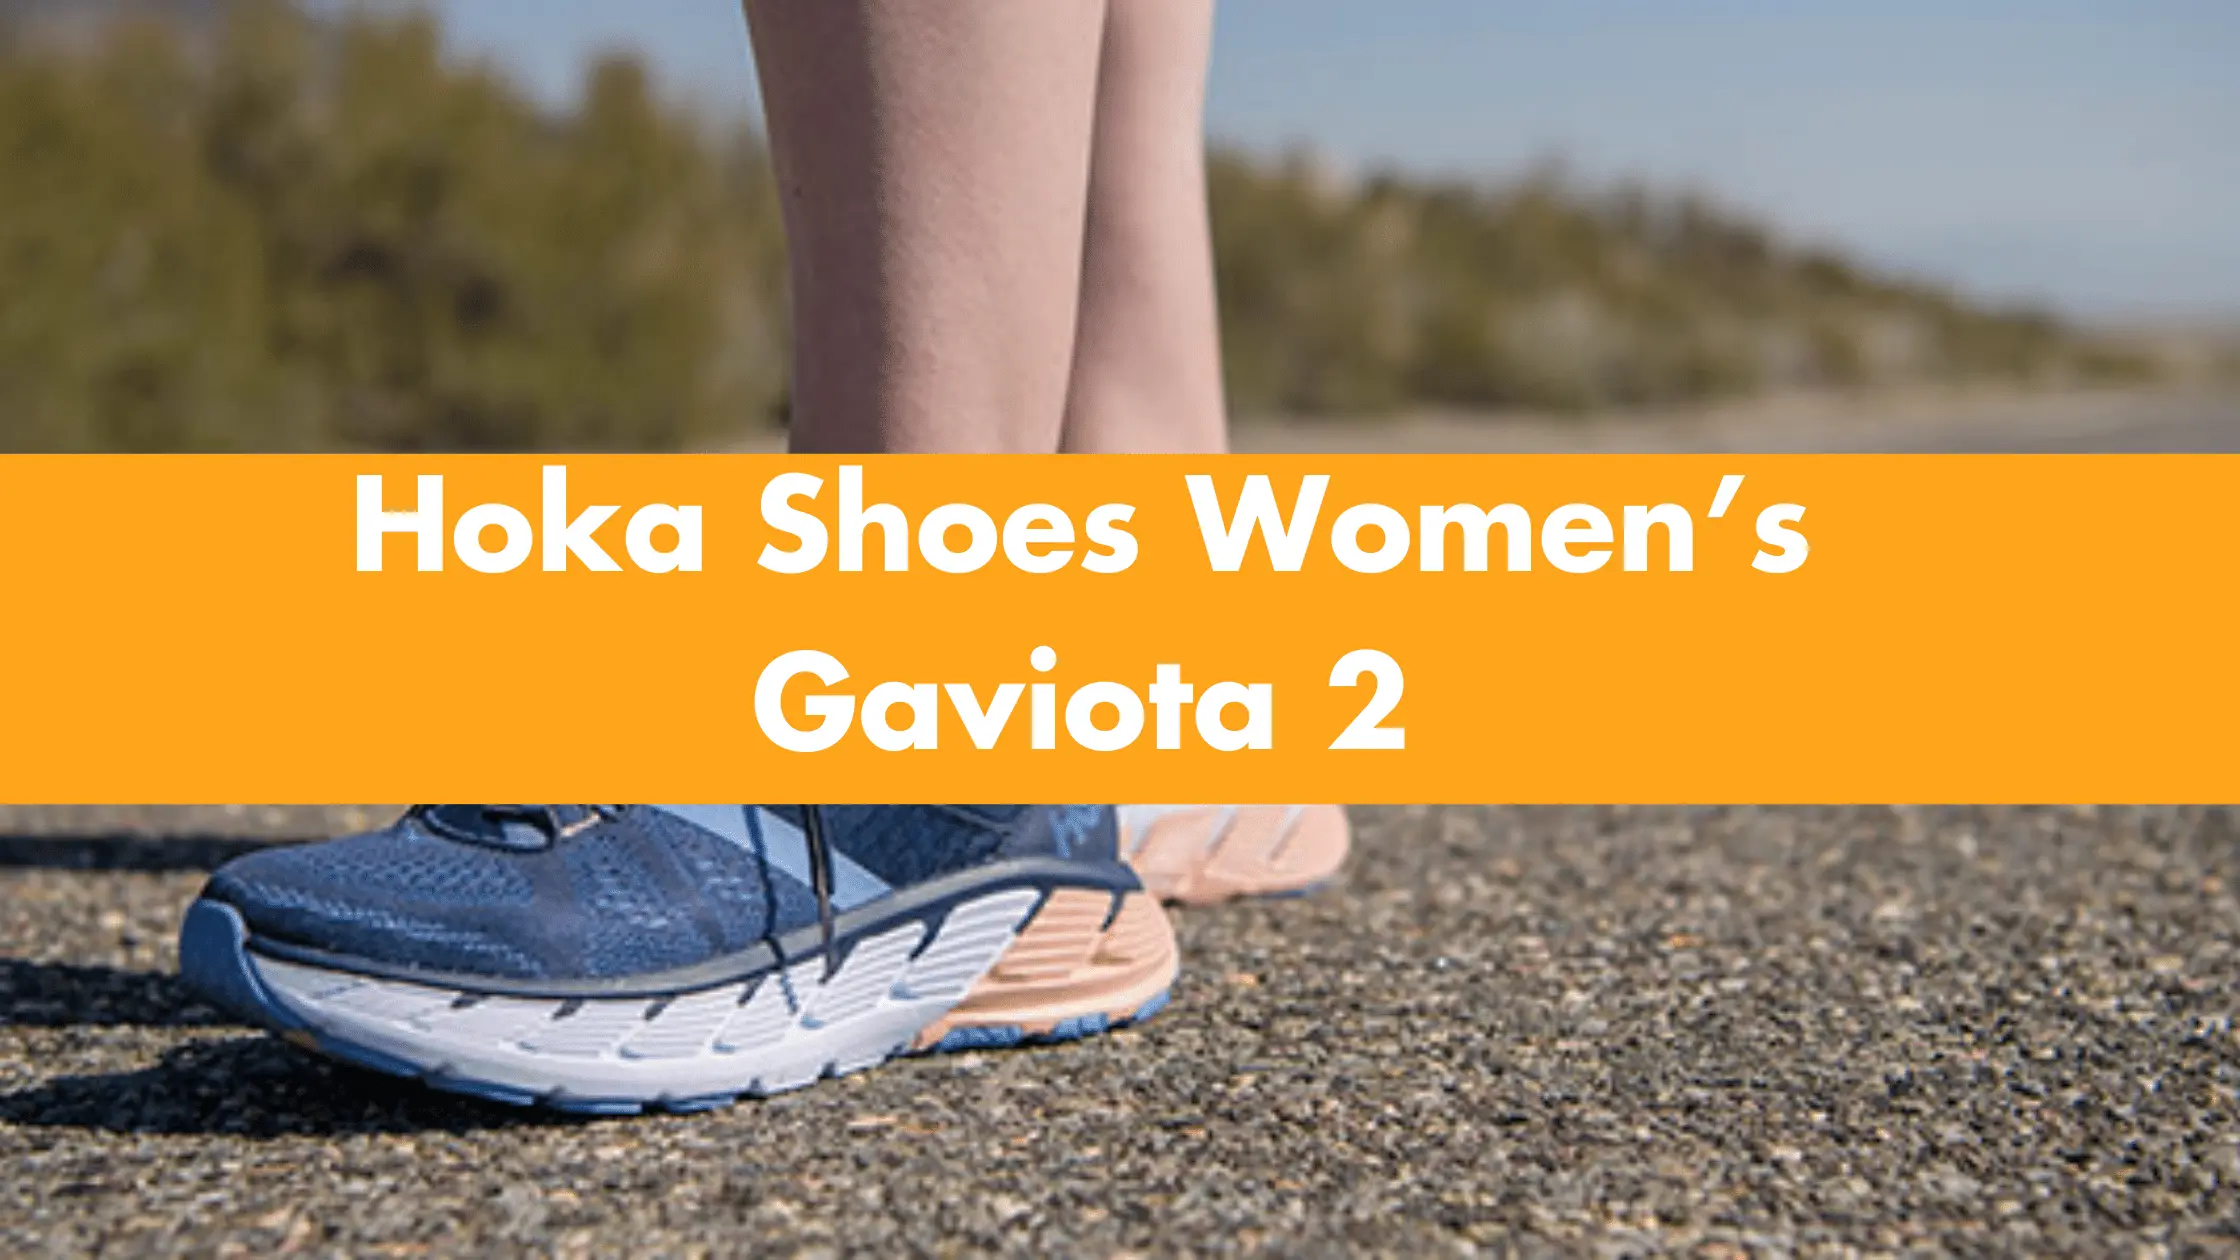 Hoka Shoes Women’s gaviota 2